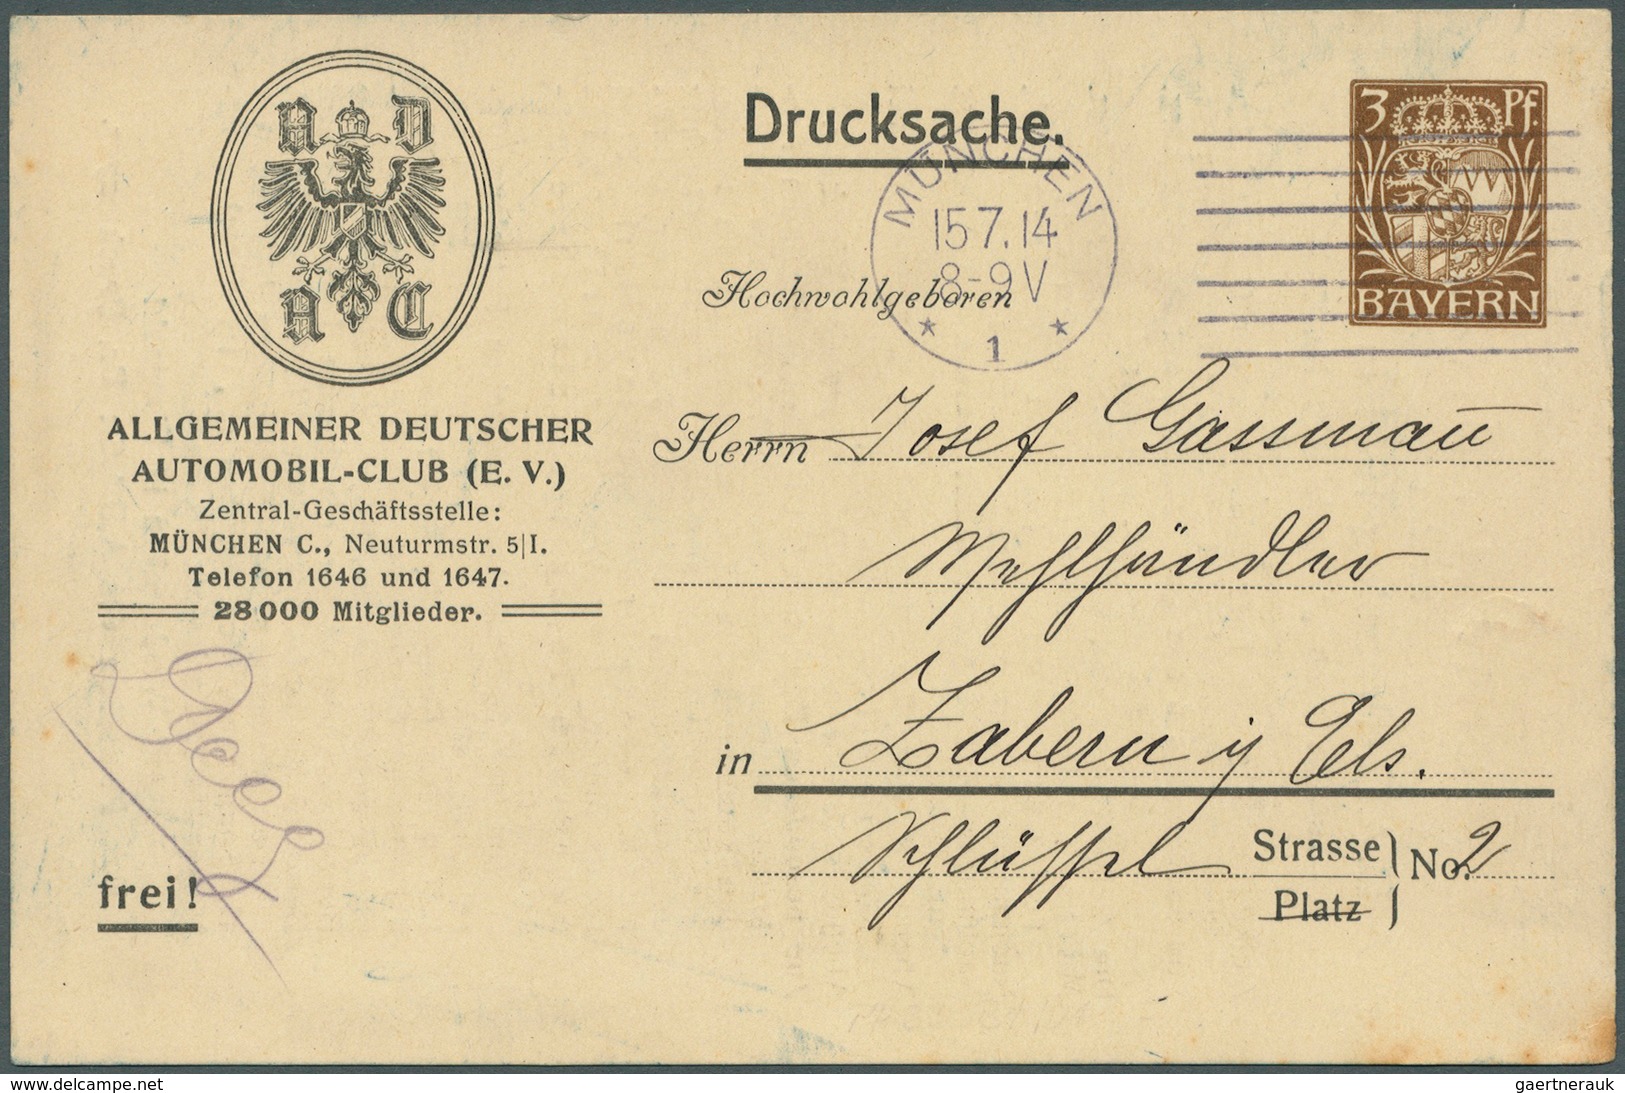 Bayern - Ganzsachen: 1900/1914, Posten von 525 Privat-Postkarten aus PP 15 C 56 bis PP 48 F, ungebra